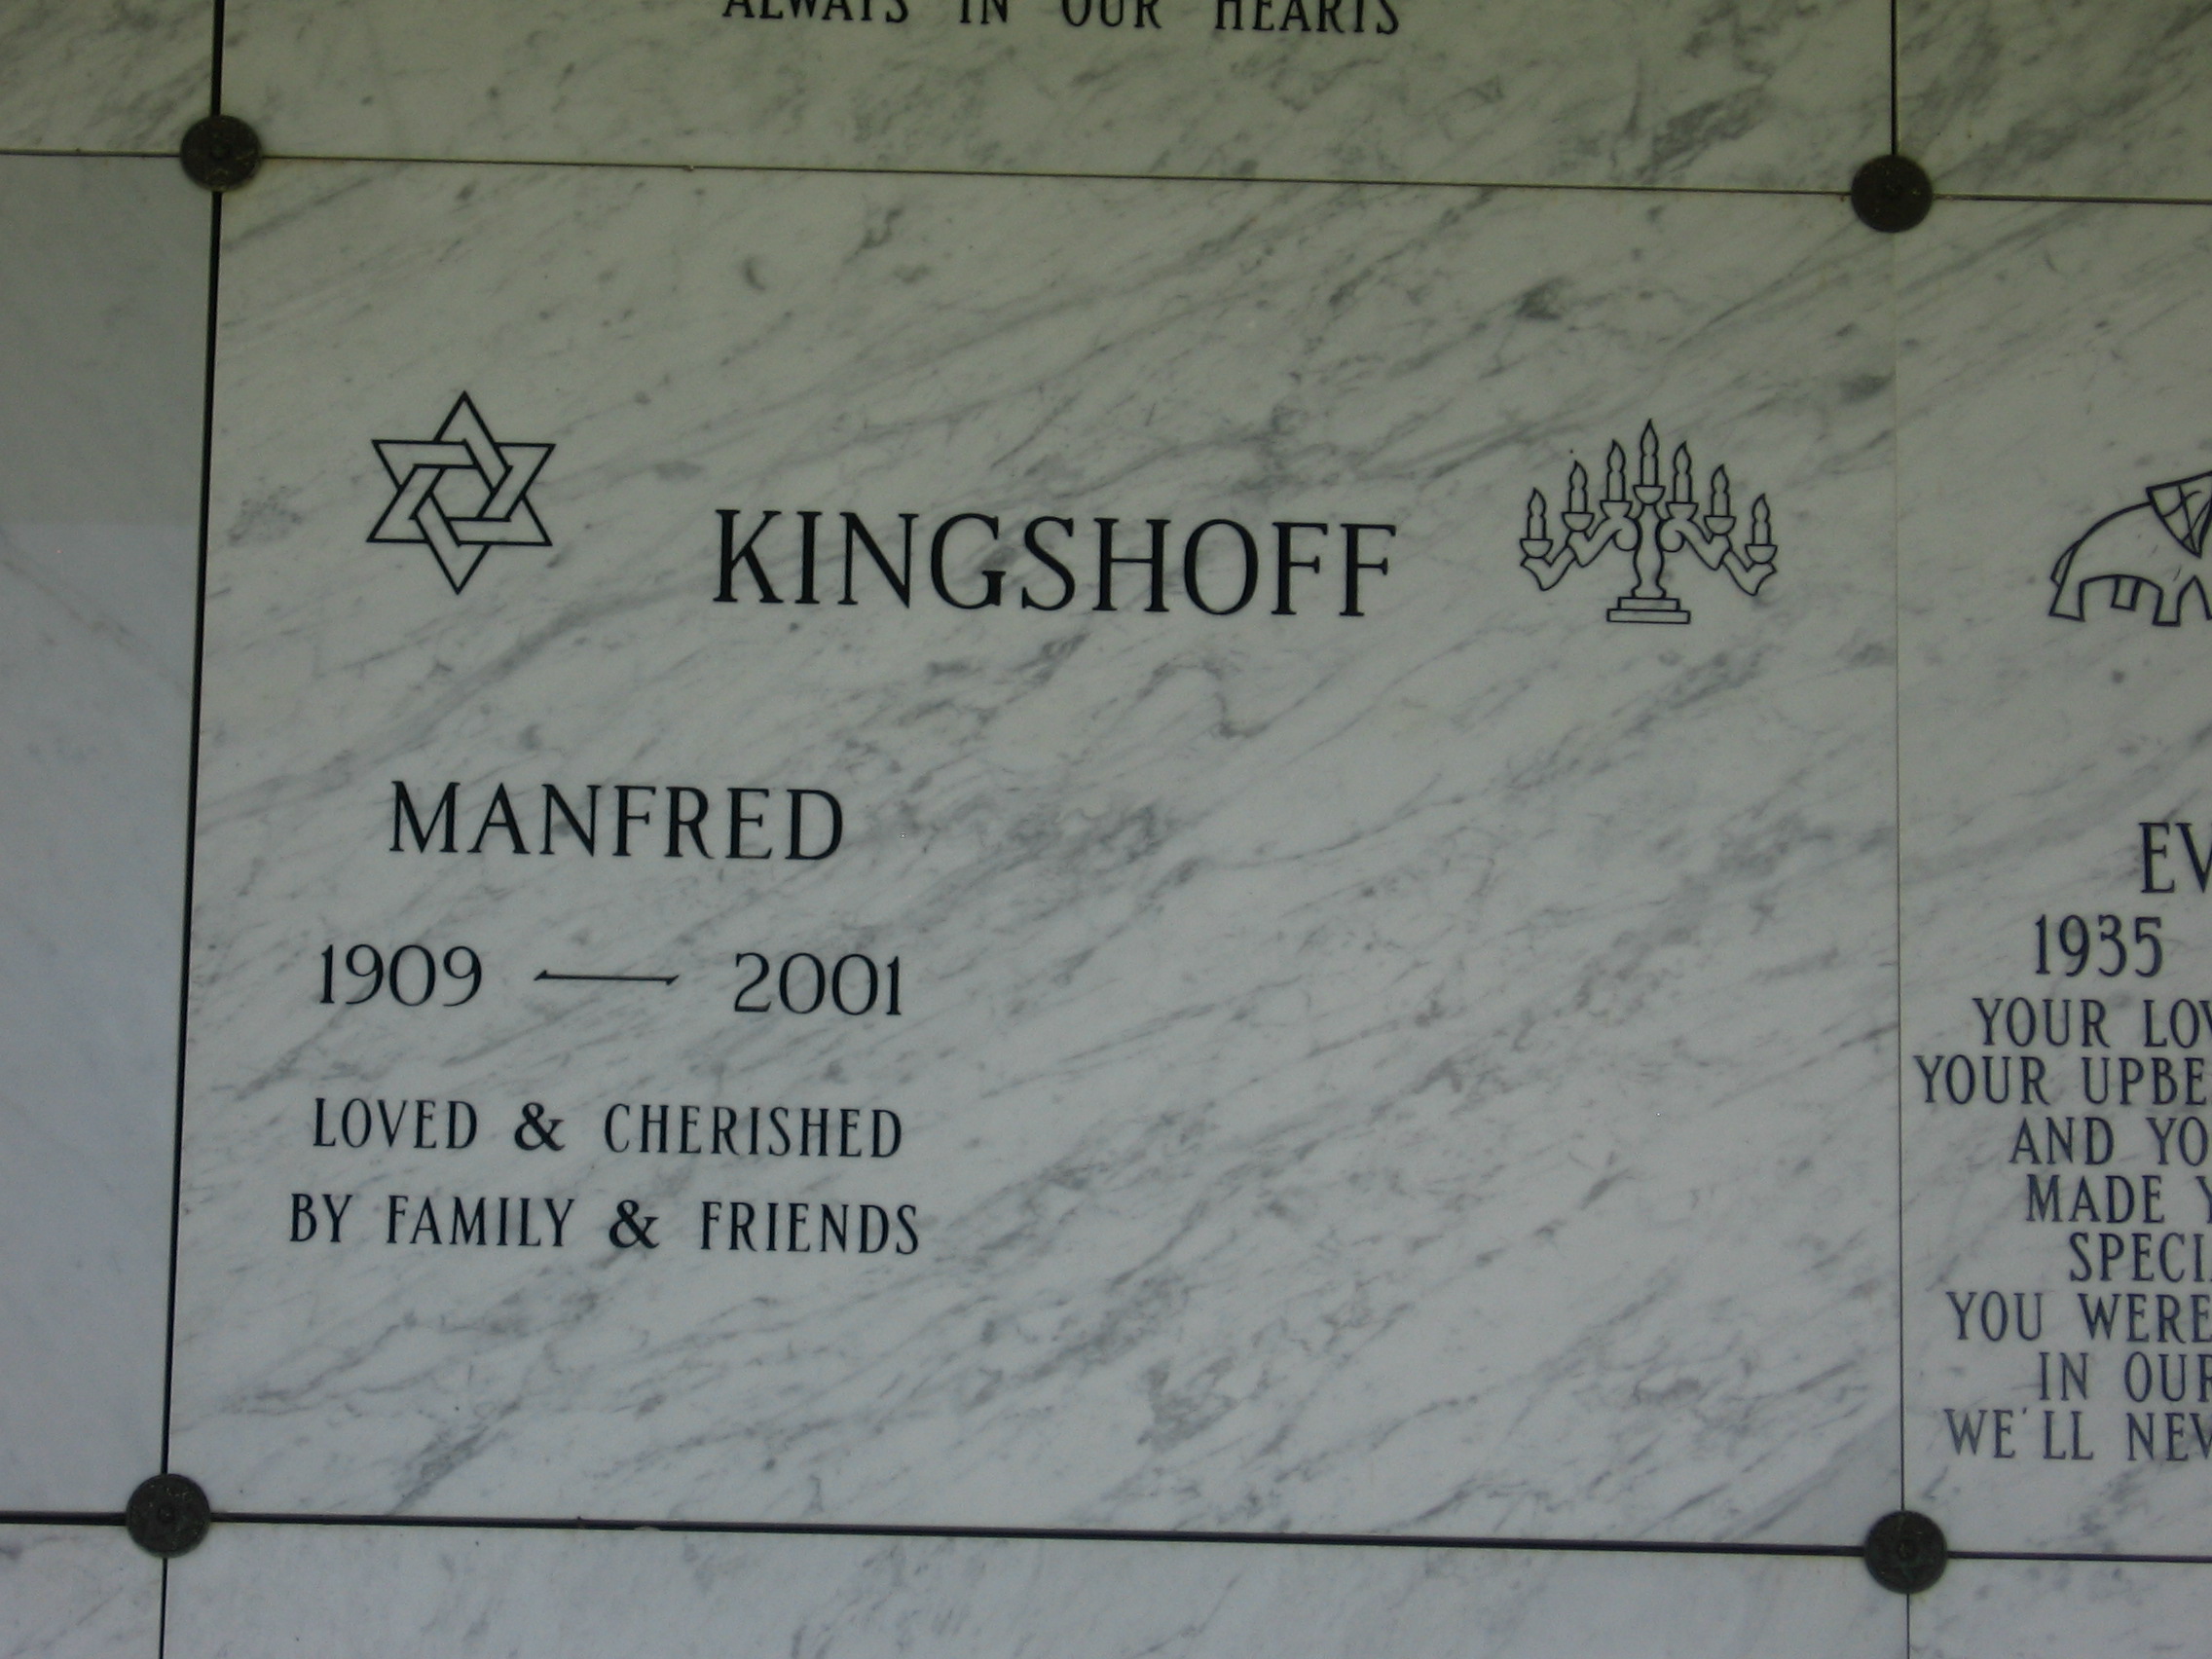 Manfred Kingshoff